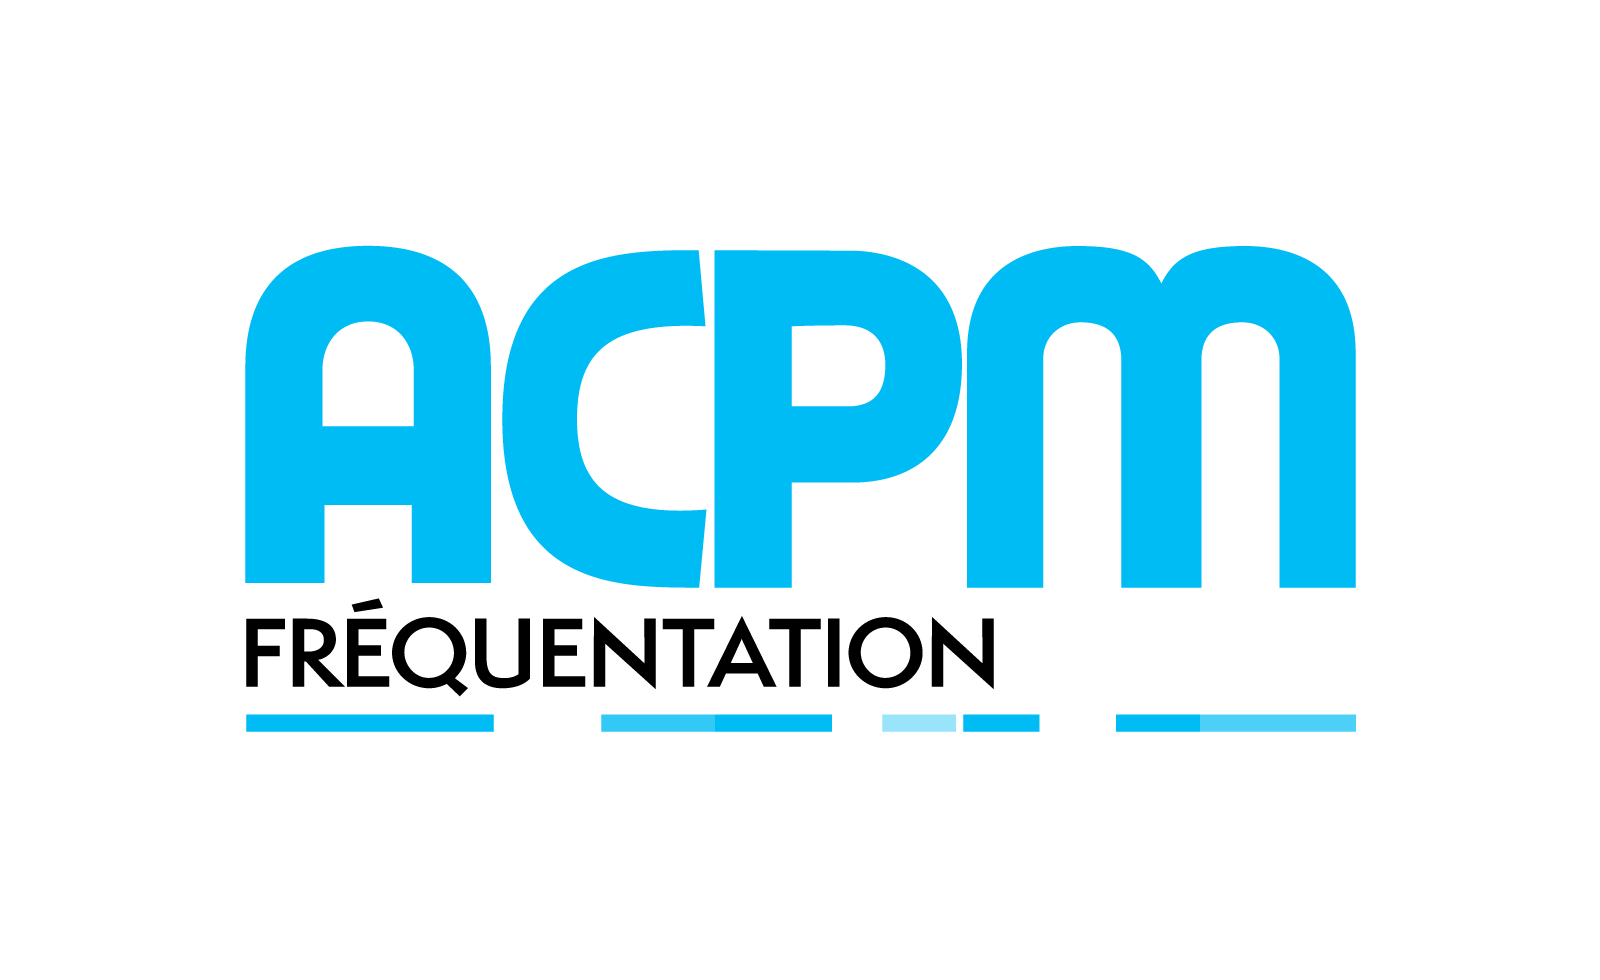 L'ACPM change de signature pour accompagner sa transformation